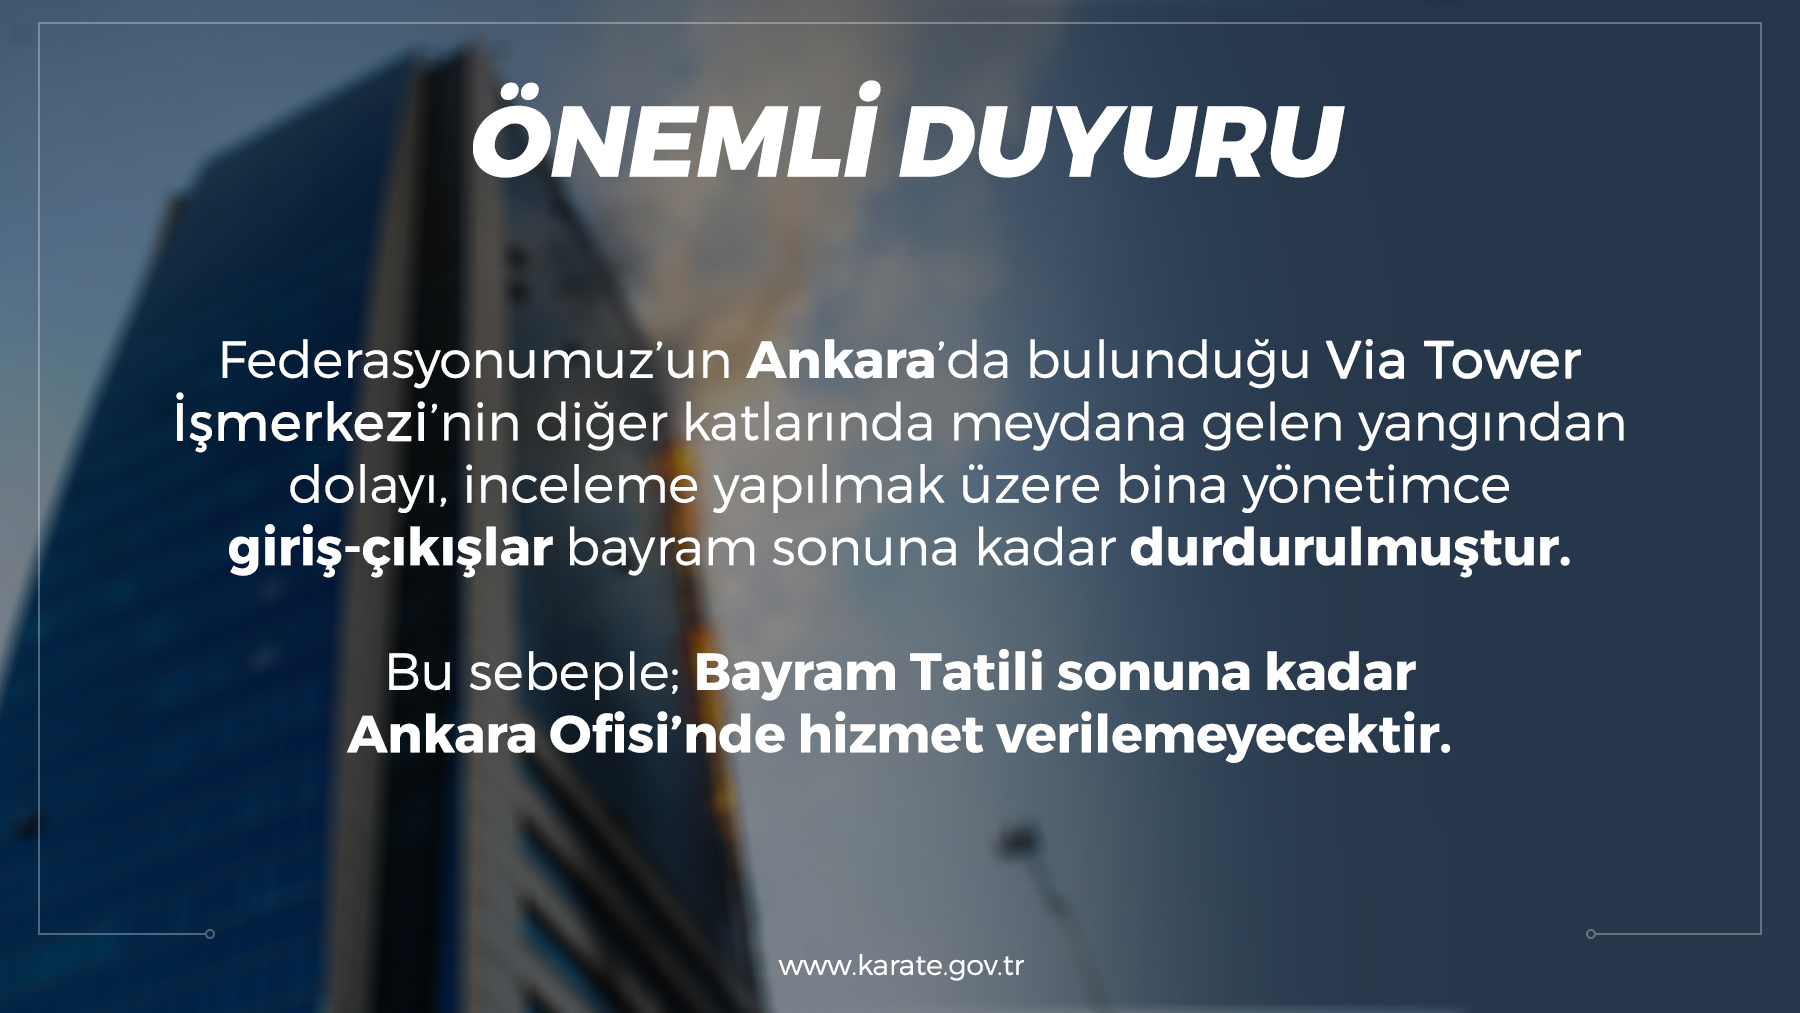 Ankara Ofisi bayram tatili sonuna kadar hizmet veremeyecek